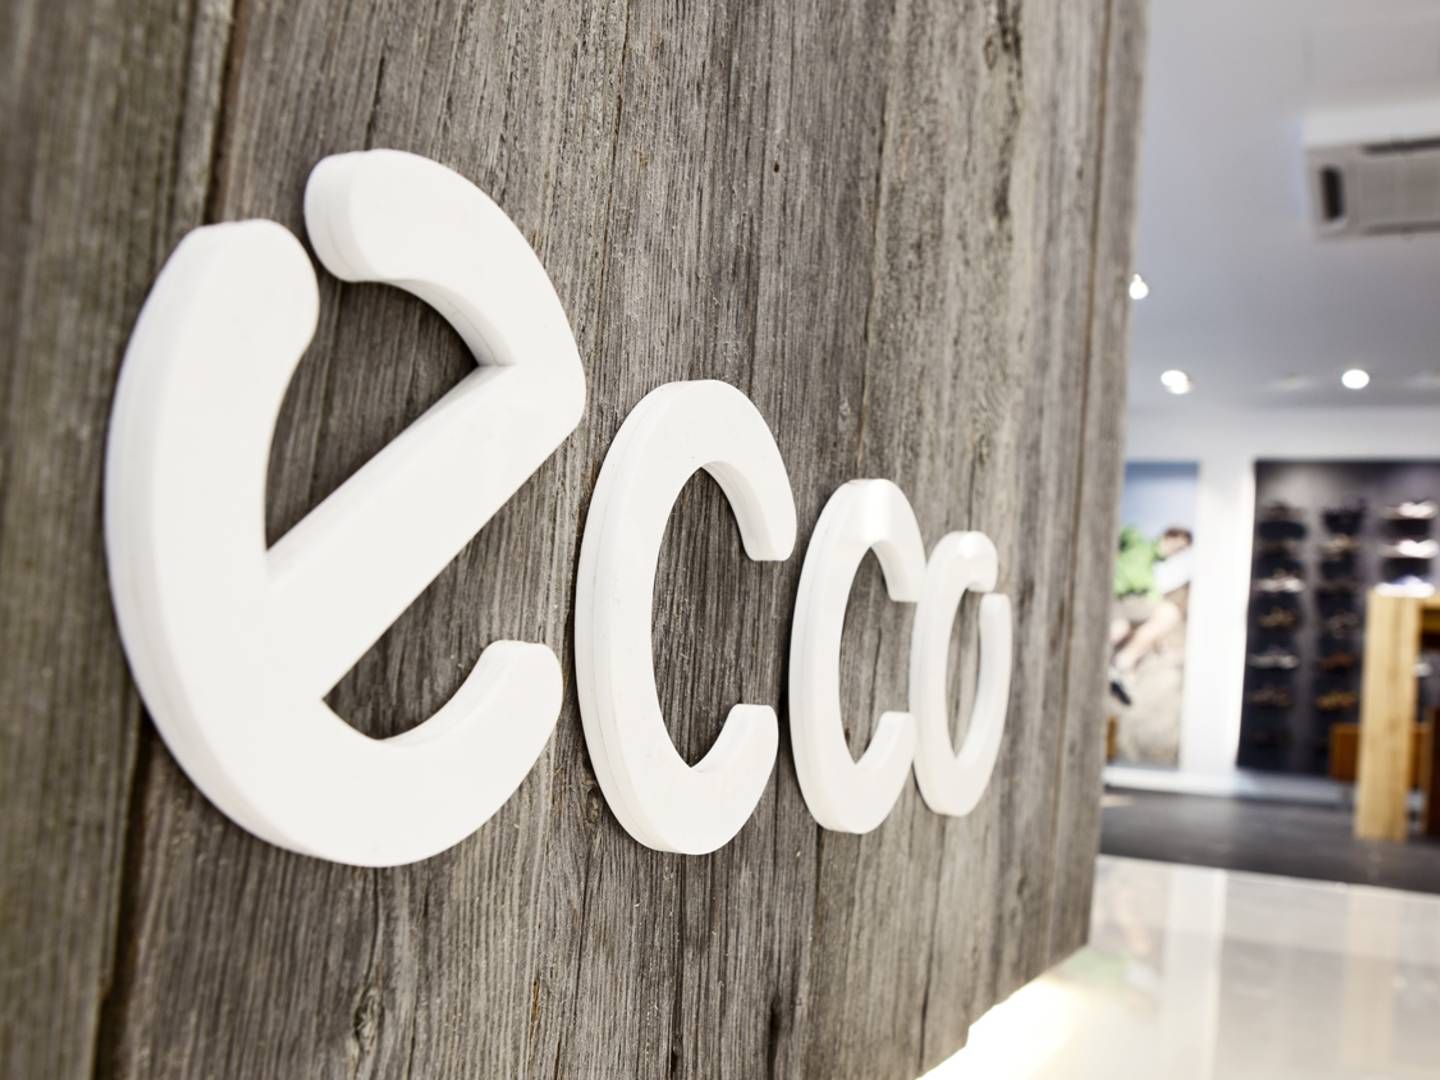 Ecco har valgt at blive i Rusland trods landets krig i Ukraine. Forklaringen har været, at man vil beskytte sine ansætte samt forhindre en mulig statslige overtagelse af aktiver. | Foto: PR / Ecco